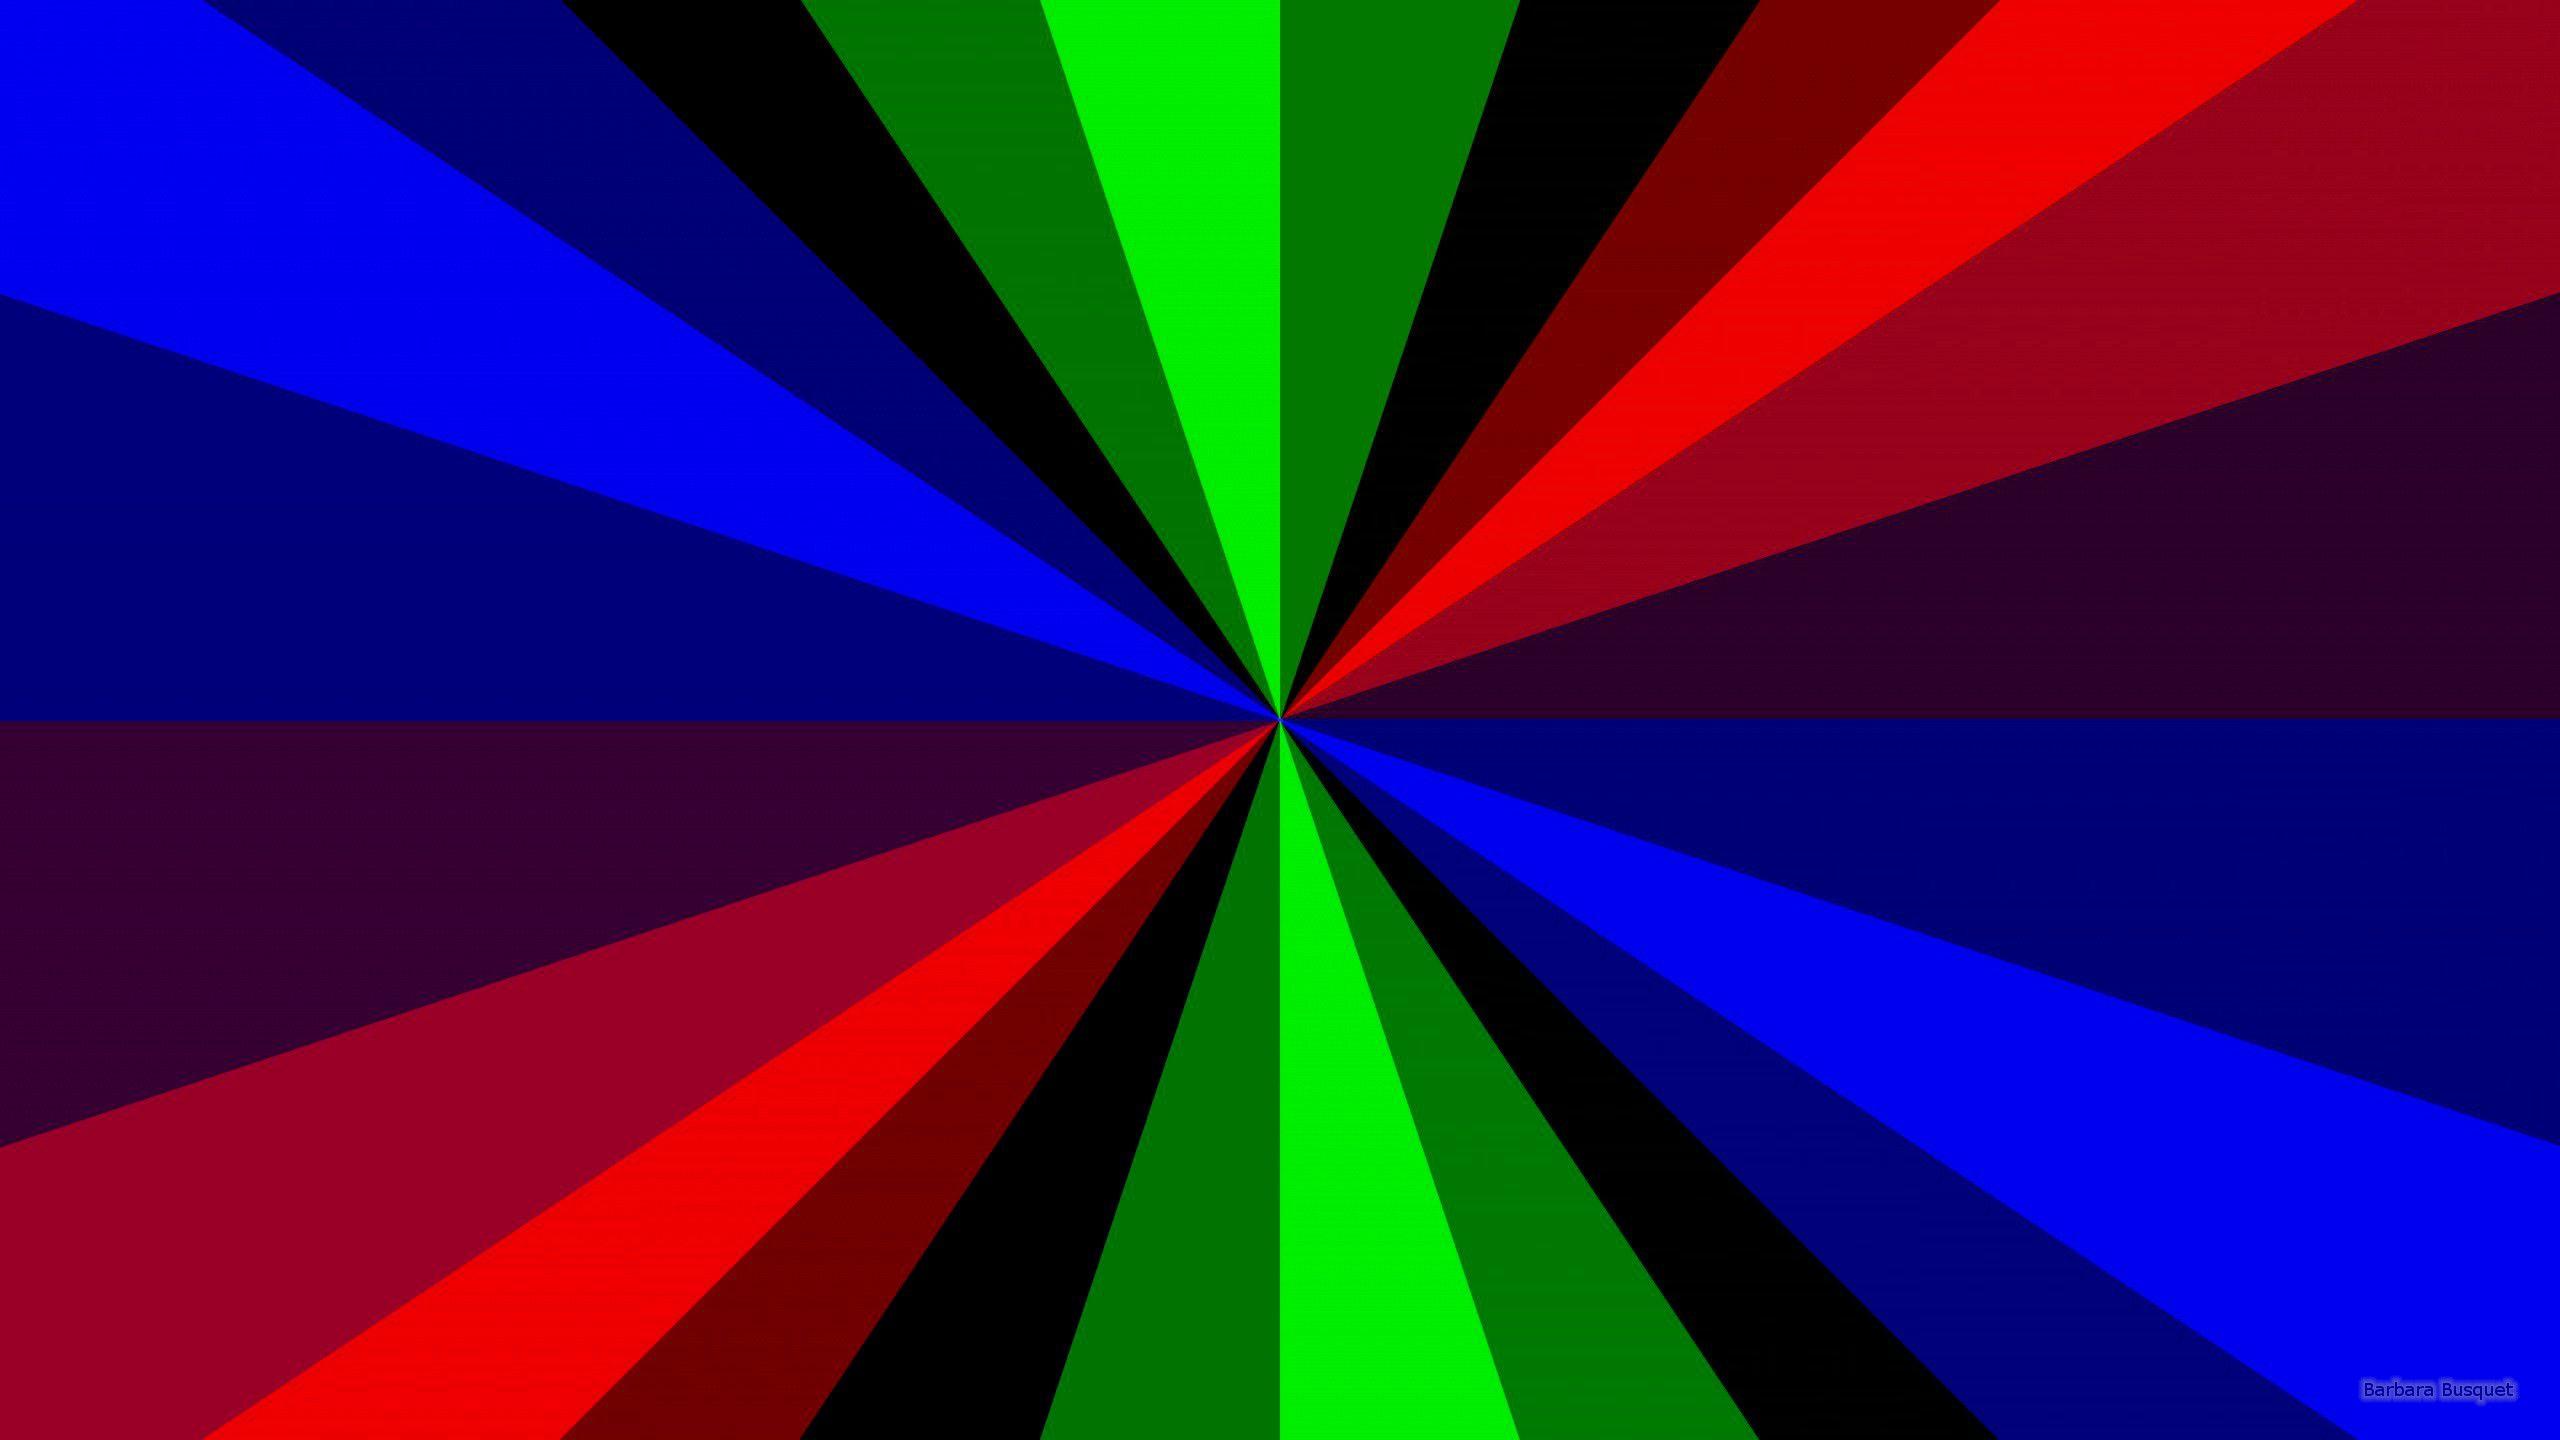 Hình nền đỏ, xanh dương và xanh lá cây - Sự kết hợp của ba màu sắc tươi sáng này sẽ mang lại cho bạn một nét độc đáo và sáng tạo cho máy tính của bạn. Hãy cùng chiêm ngưỡng hình ảnh và cảm nhận sự phối hợp của ba màu sắc này đã tạo ra một hình nền độc đáo và tuyệt vời như thế nào.